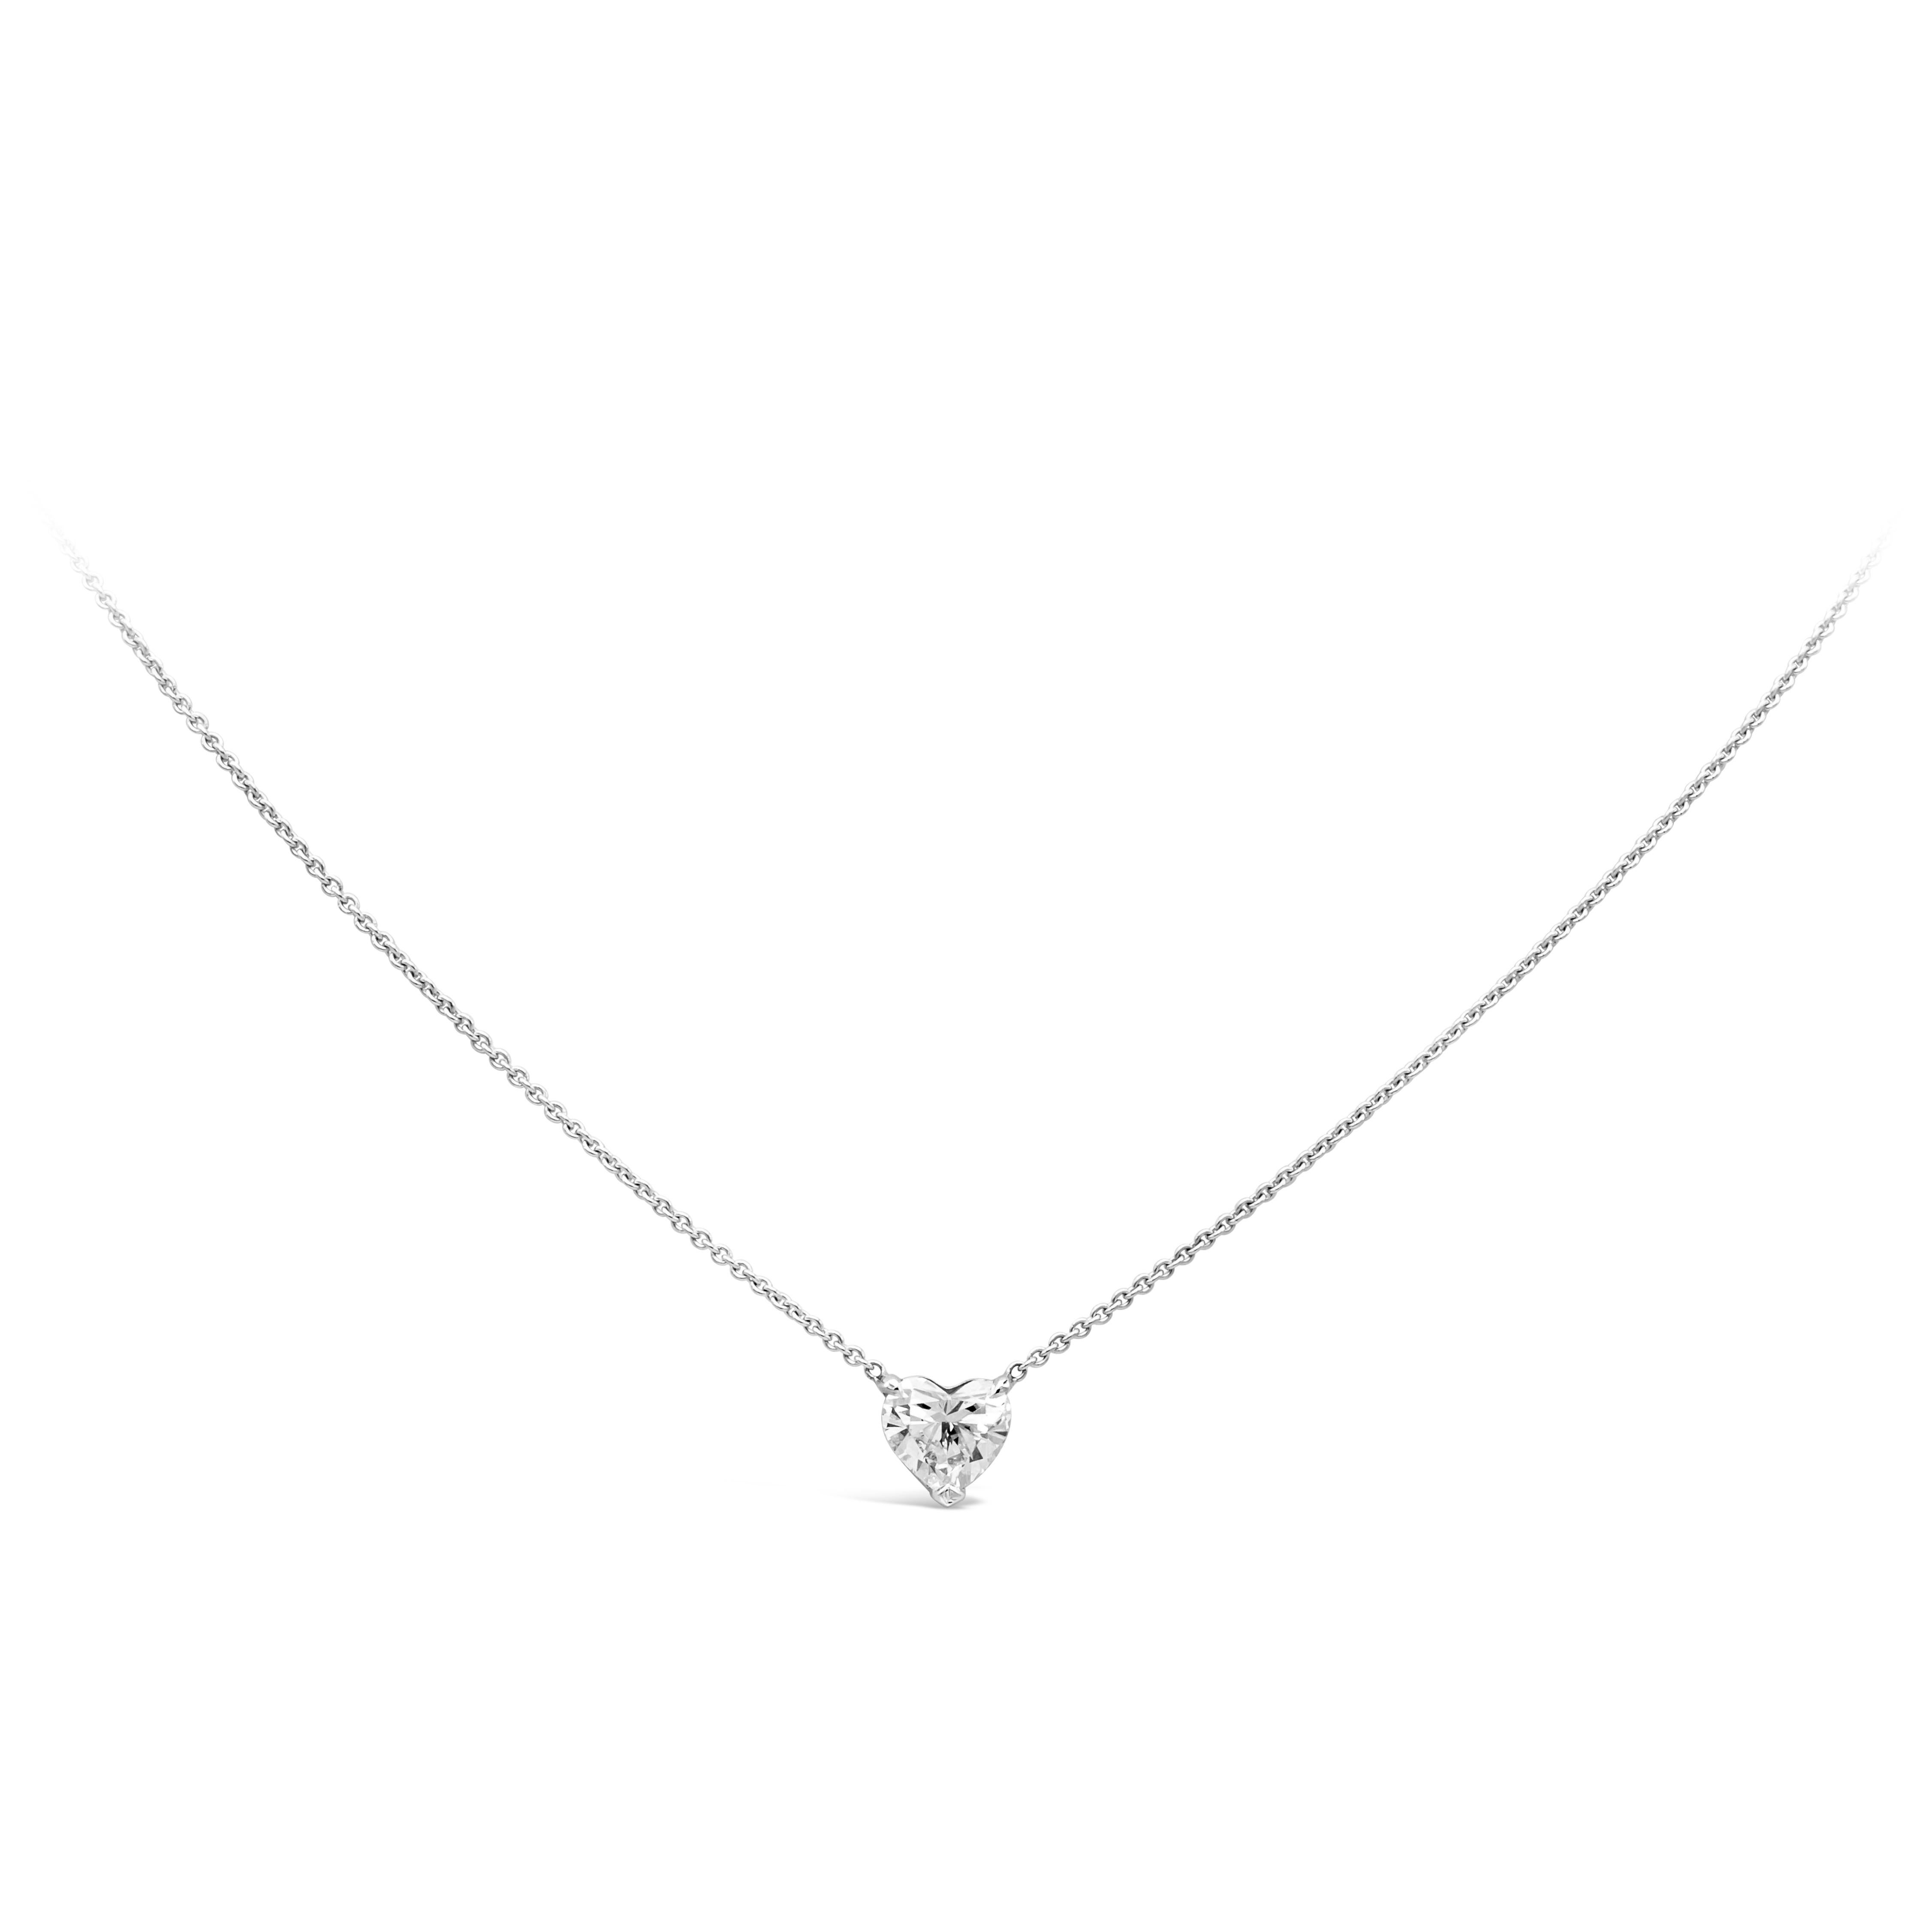 Collier pendentif classique mettant en valeur un diamant en forme de cœur de 1,05 carats, serti dans une monture panier en platine poli. Il est suspendu à une chaîne en or blanc réglable de 16 pouces.

Roman Malakov est une maison sur mesure,